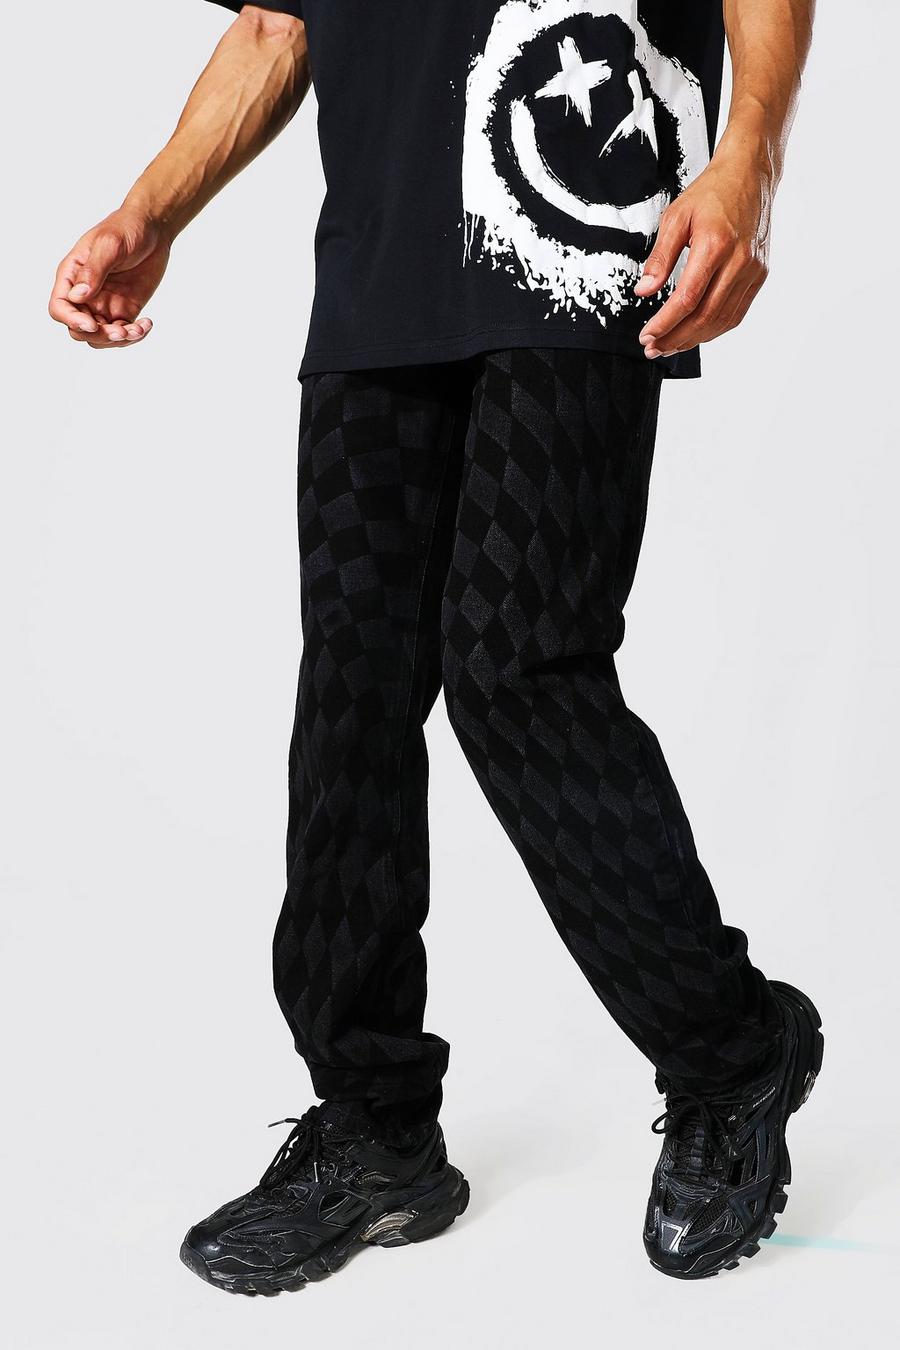 שחור דהוי ג'ינס עם הדפס משבצות מעוקלות ובגזרה משוחררת, לגברים גבוהים image number 1